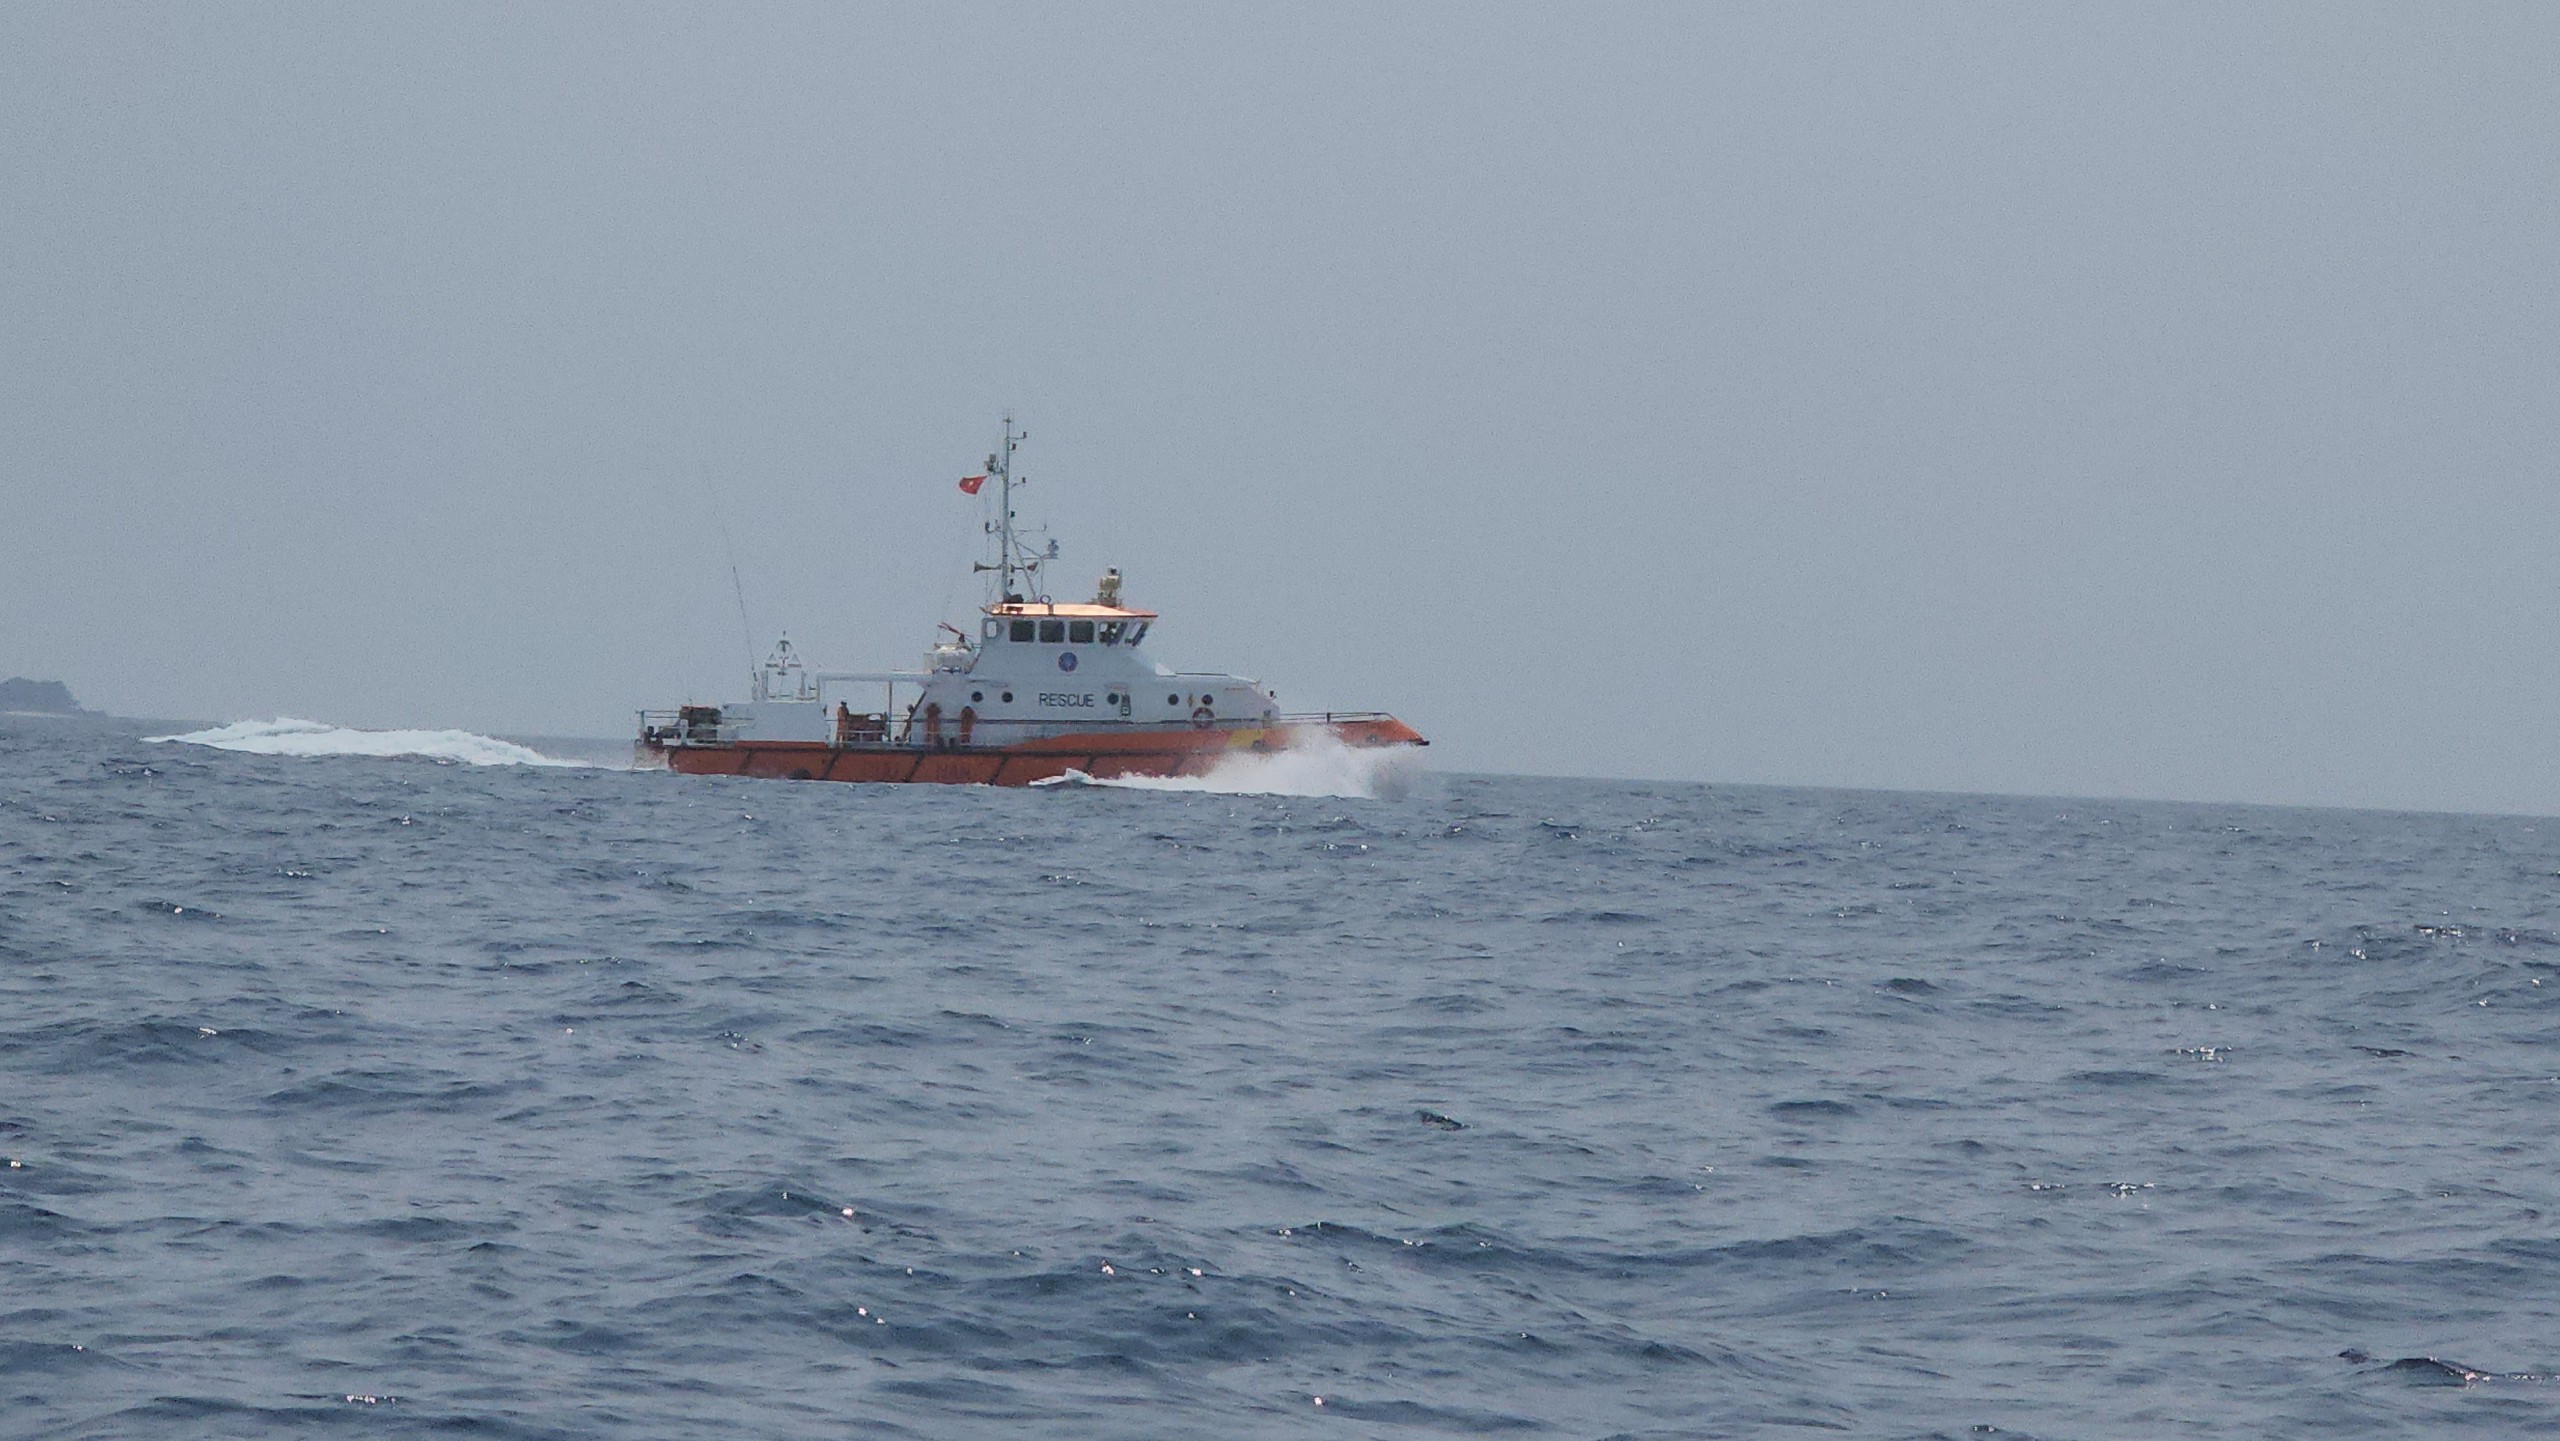 Vụ chìm sà lan ở Quảng Ngãi: Huy động đội thợ lặn chuyên nghiệp tìm kiếm- Ảnh 3.